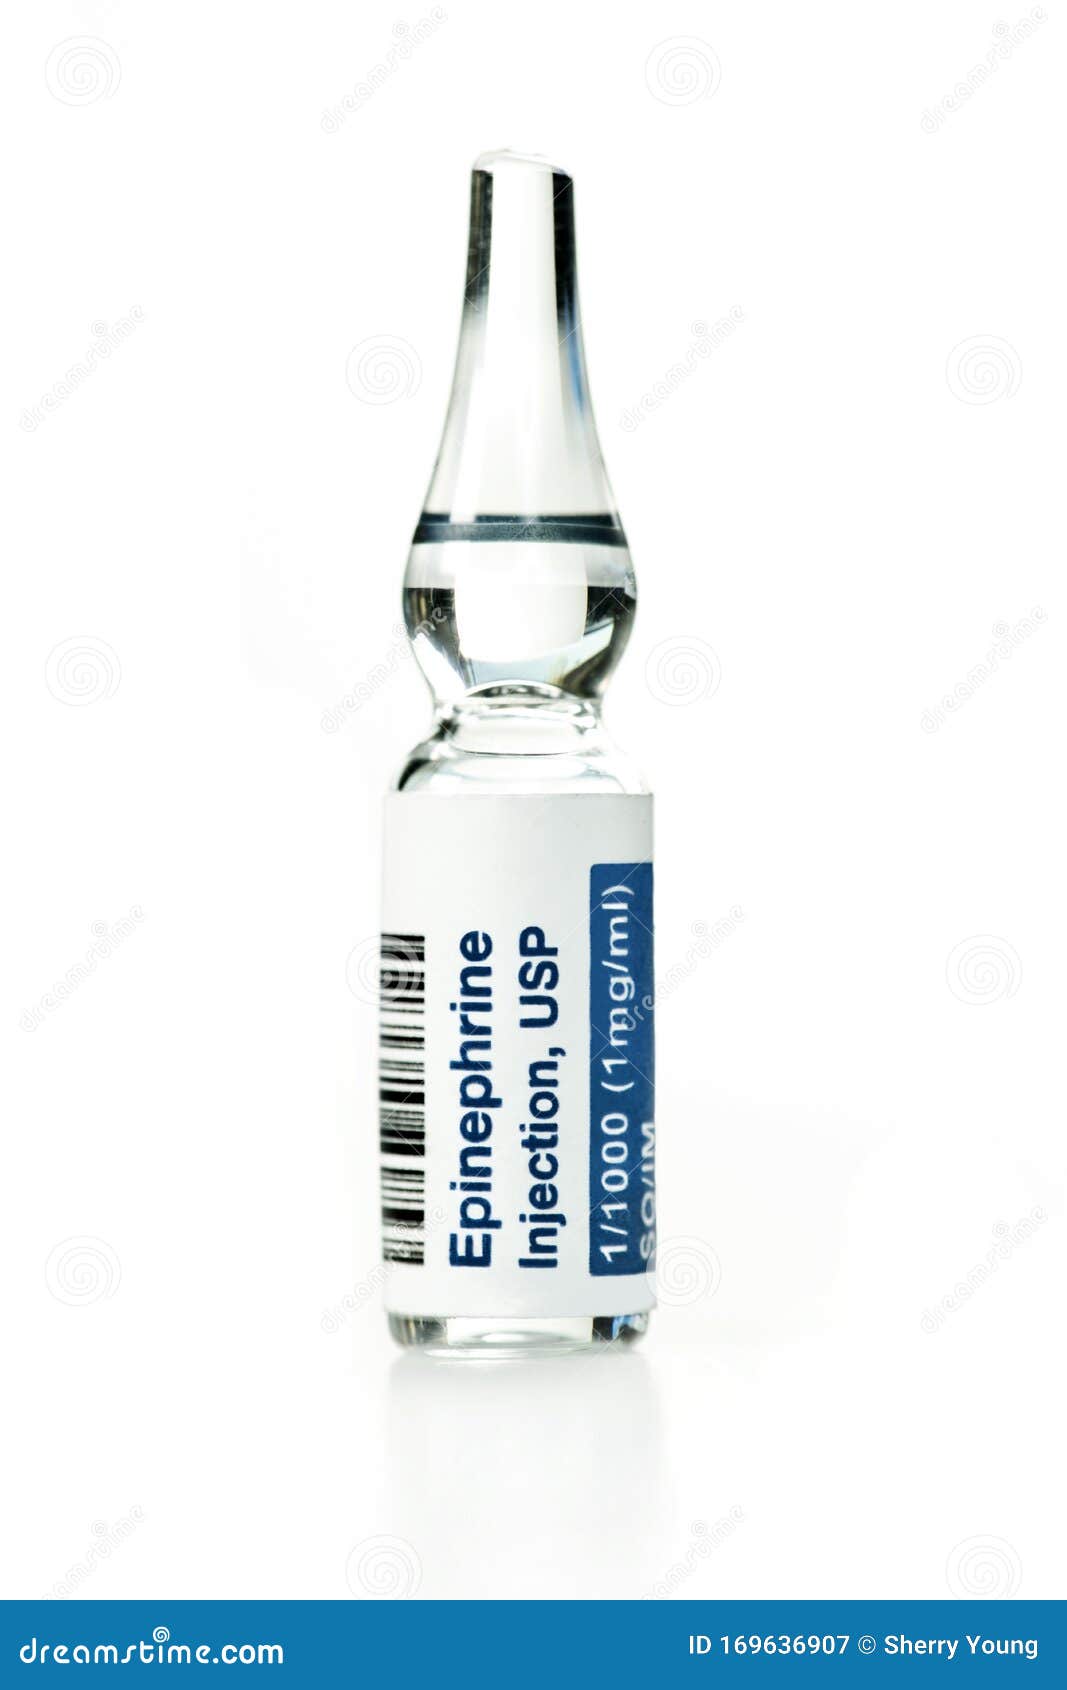 epinephrine injection ampule